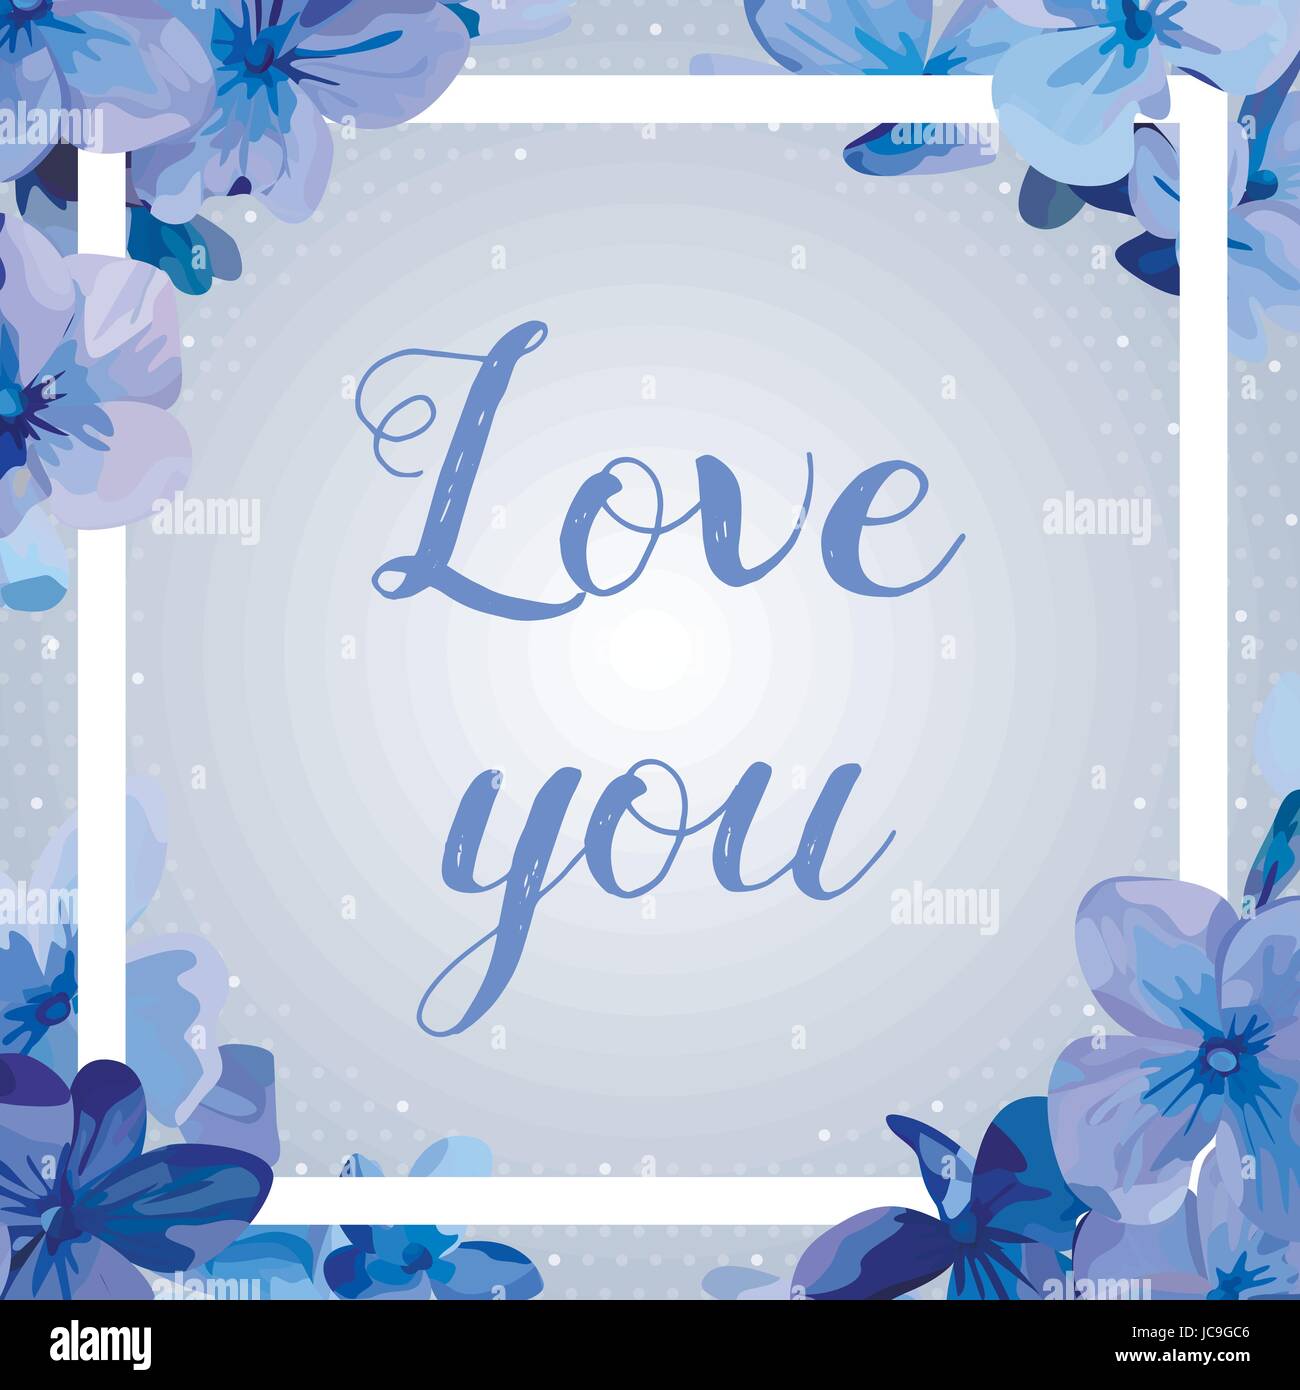 Hortensia Hortensie Blume lila blühende blaue Blumen schöne schöne Sommer-Blumenstrauß-Vektor-Illustration. Ansicht von oben eckig elegante Aquarell frame Stock Vektor